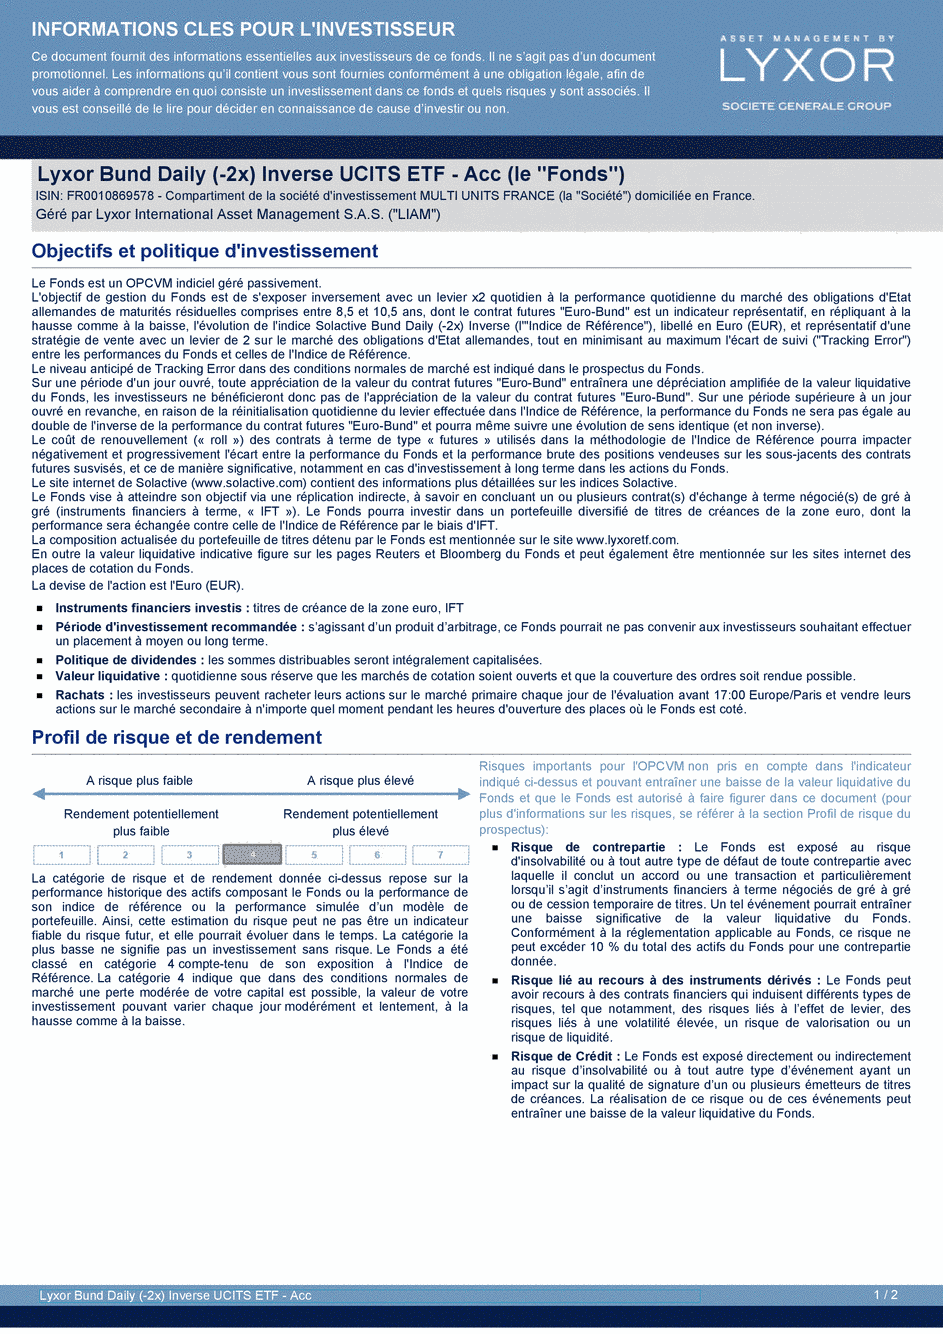 DICI Lyxor Bund Daily (-2x) Inverse UCITS ETF - Acc - 19/02/2020 - Français